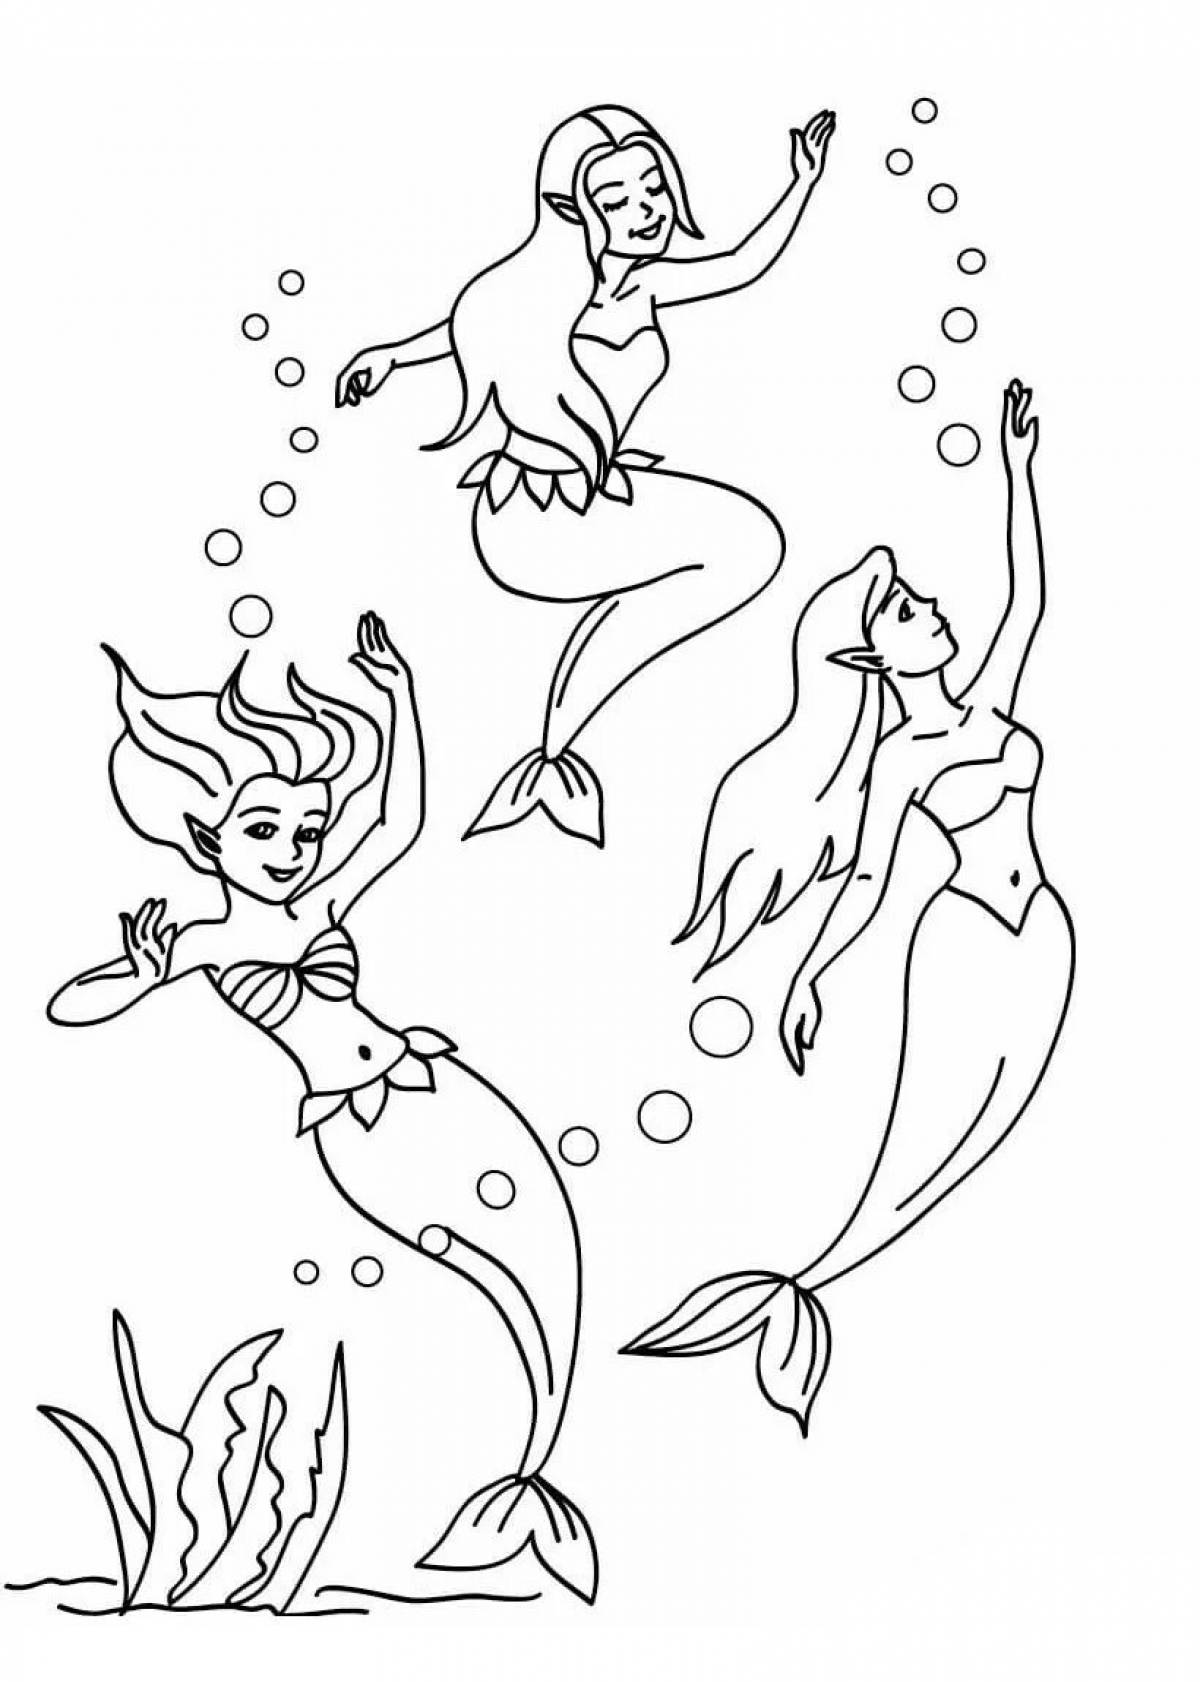 Mermaid pattern #1